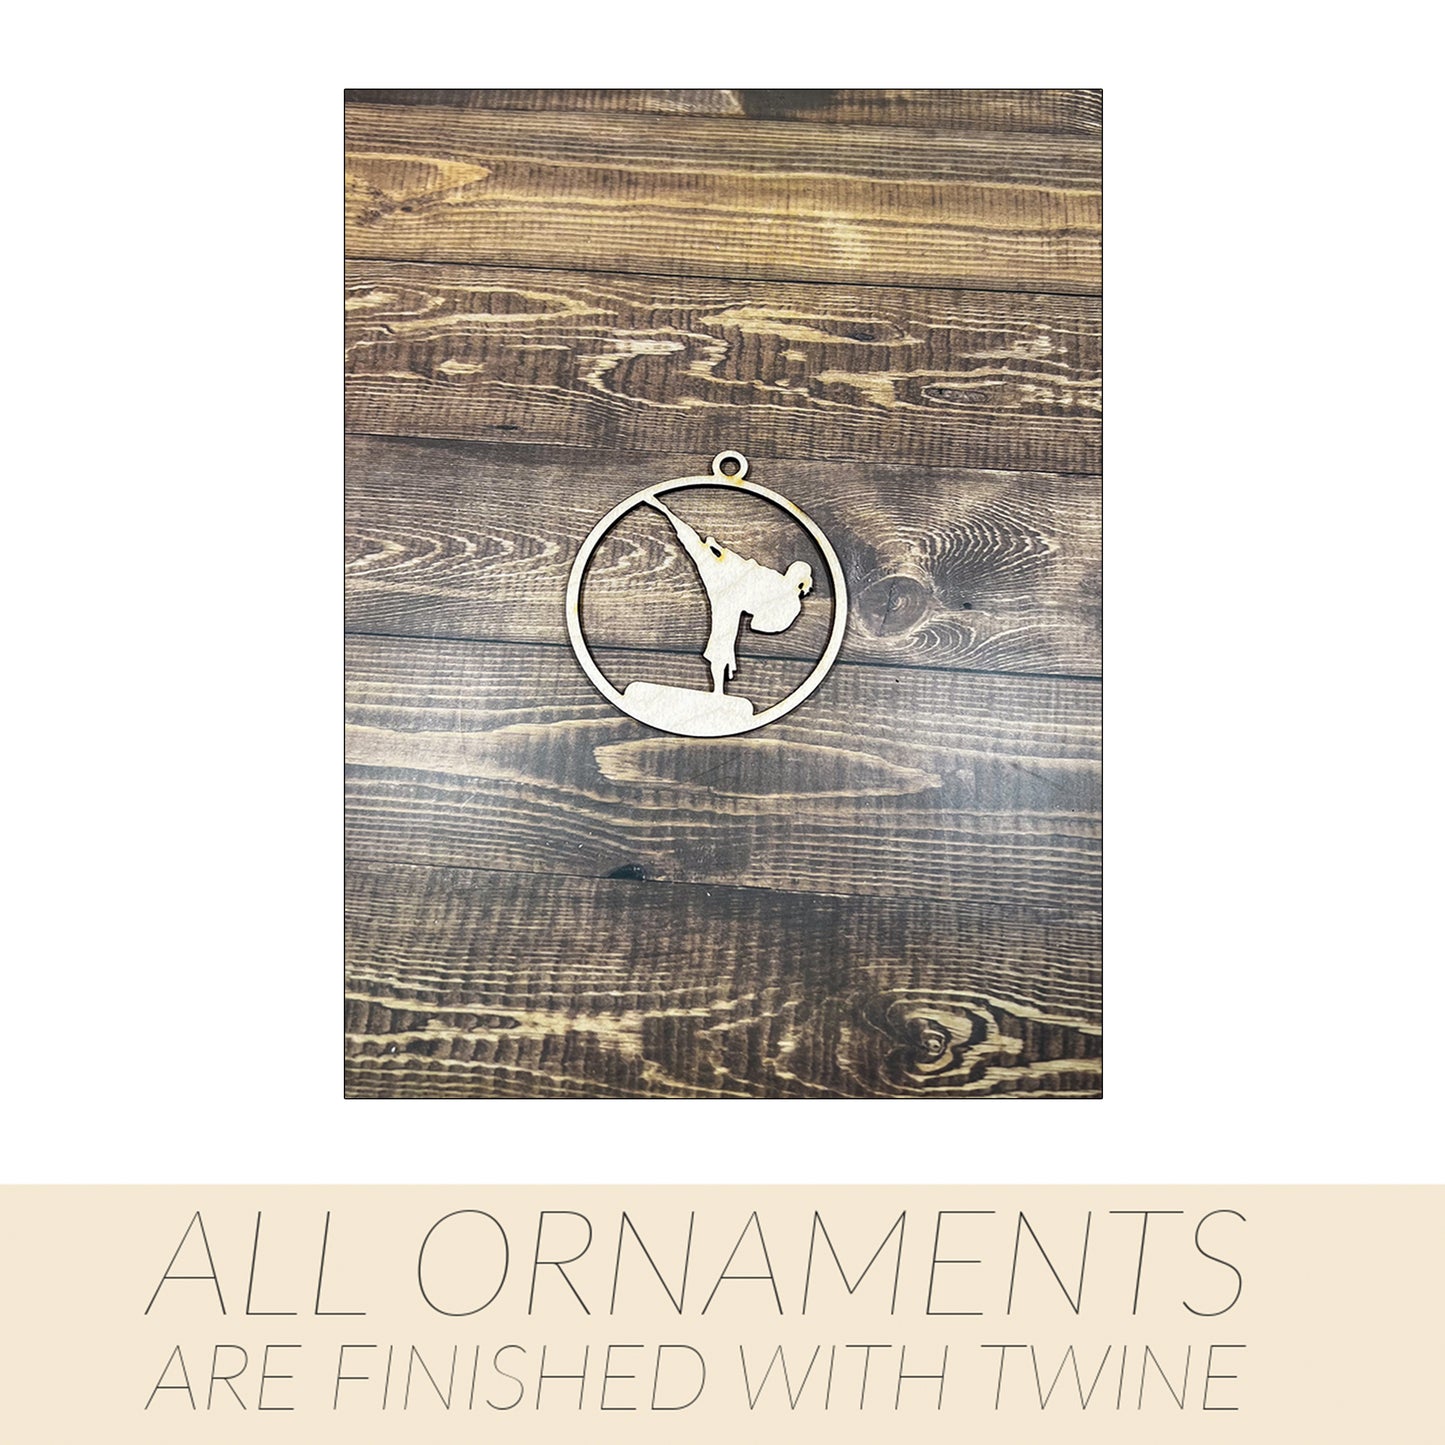 Karate Ornament, Wooden Sports Ornament, Sports Ornament, Engraved Ornament, Laser Engraved Wood Ornament